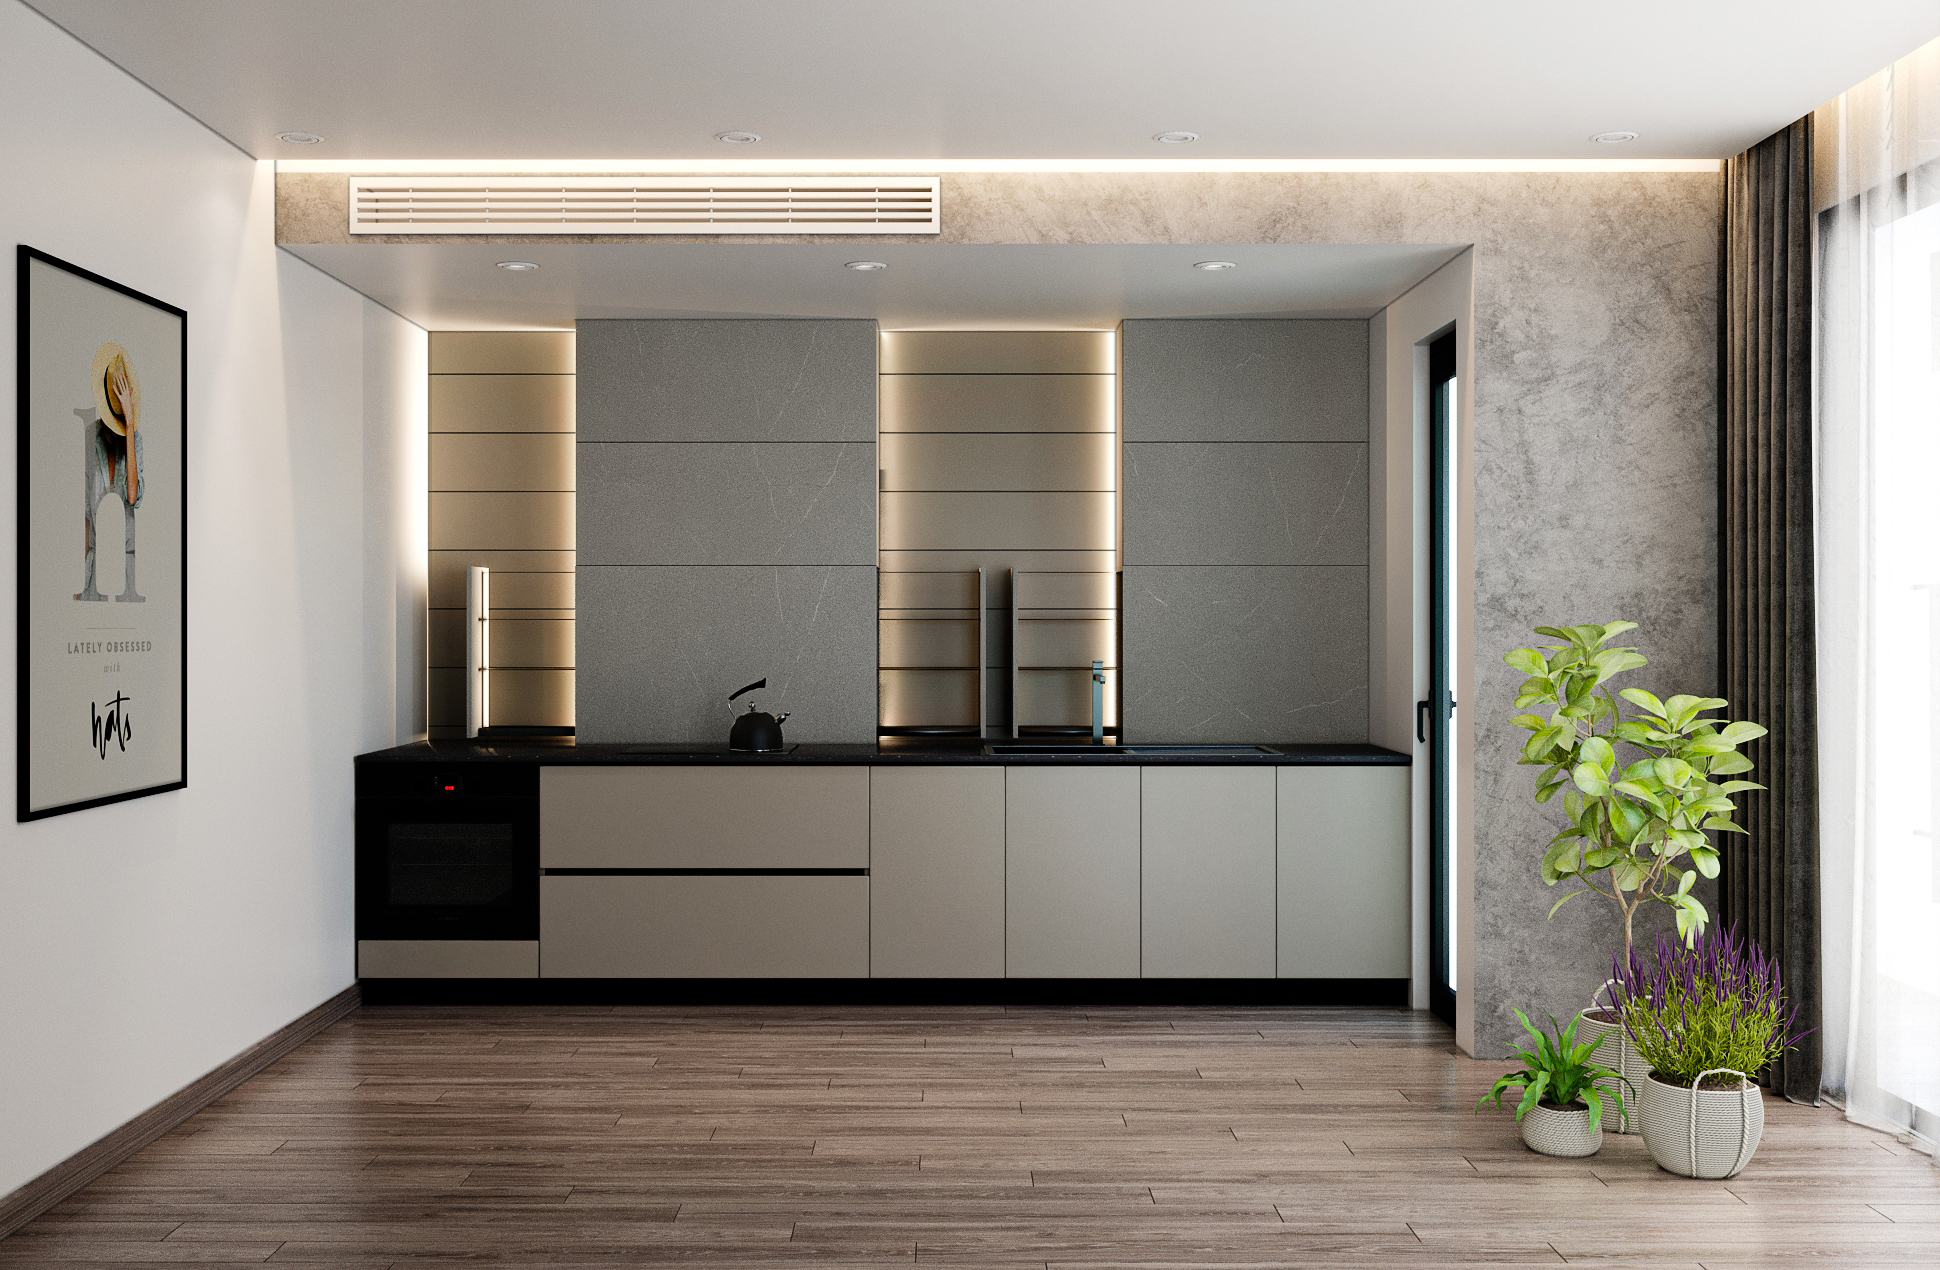 Tủ bếp này mang đến sự tối giản, tiện ích cũng như linh hoạt cho không gian hẹp